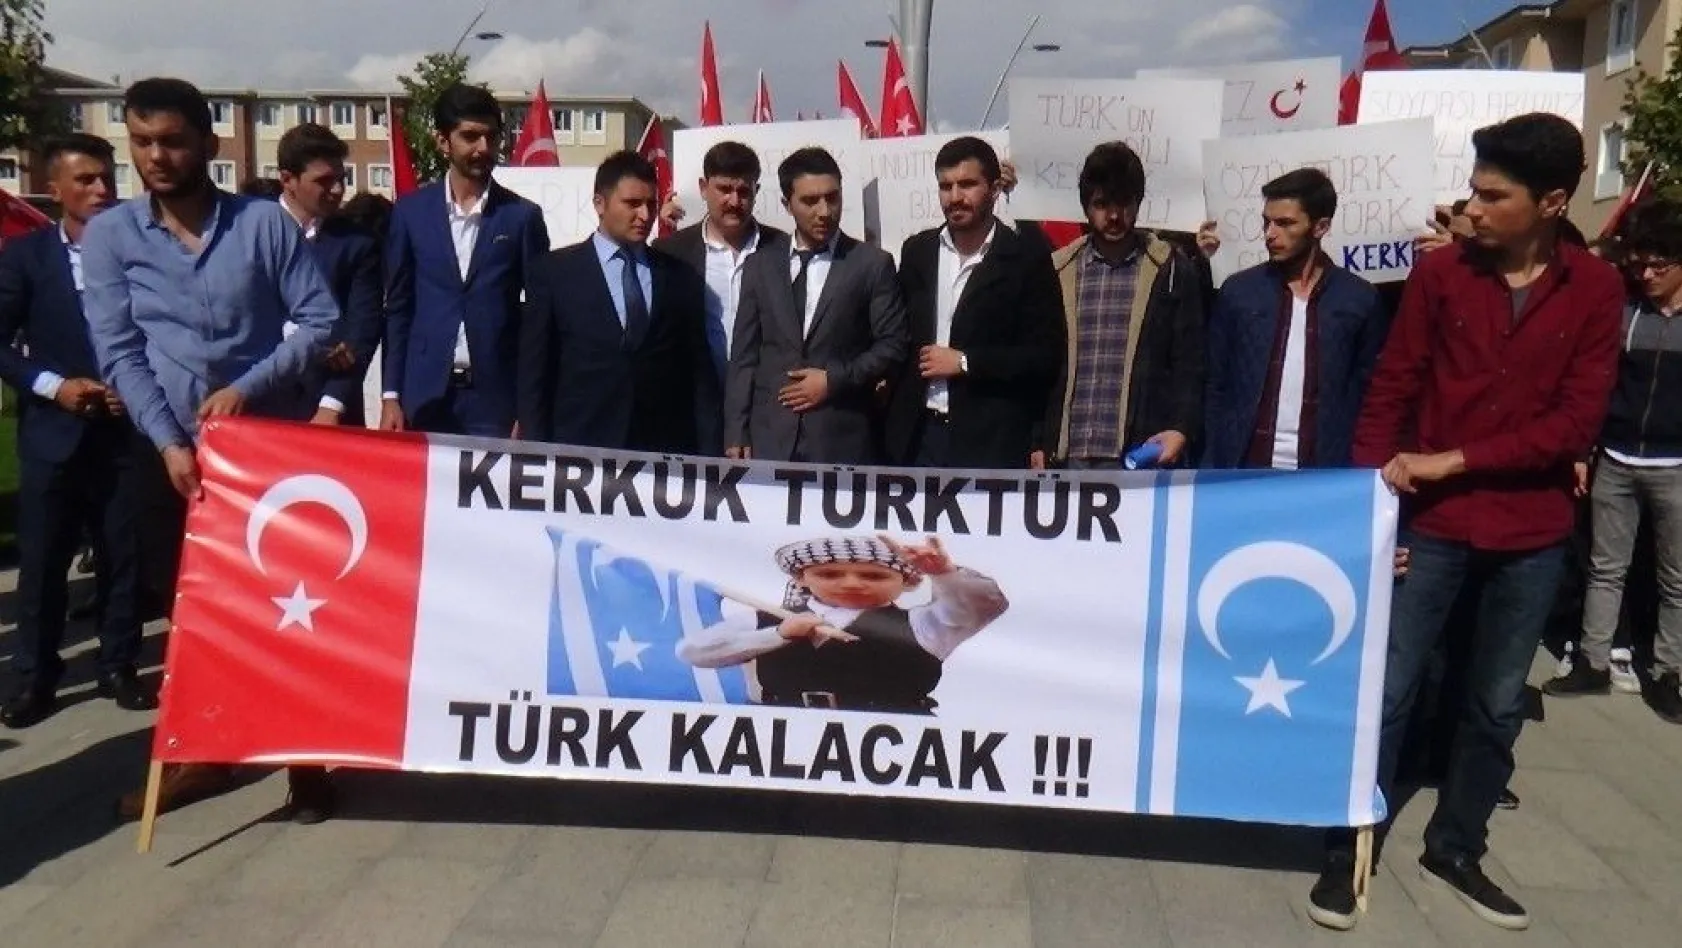 Erzincan Üniversitesi'nden Kerkük açıklaması
